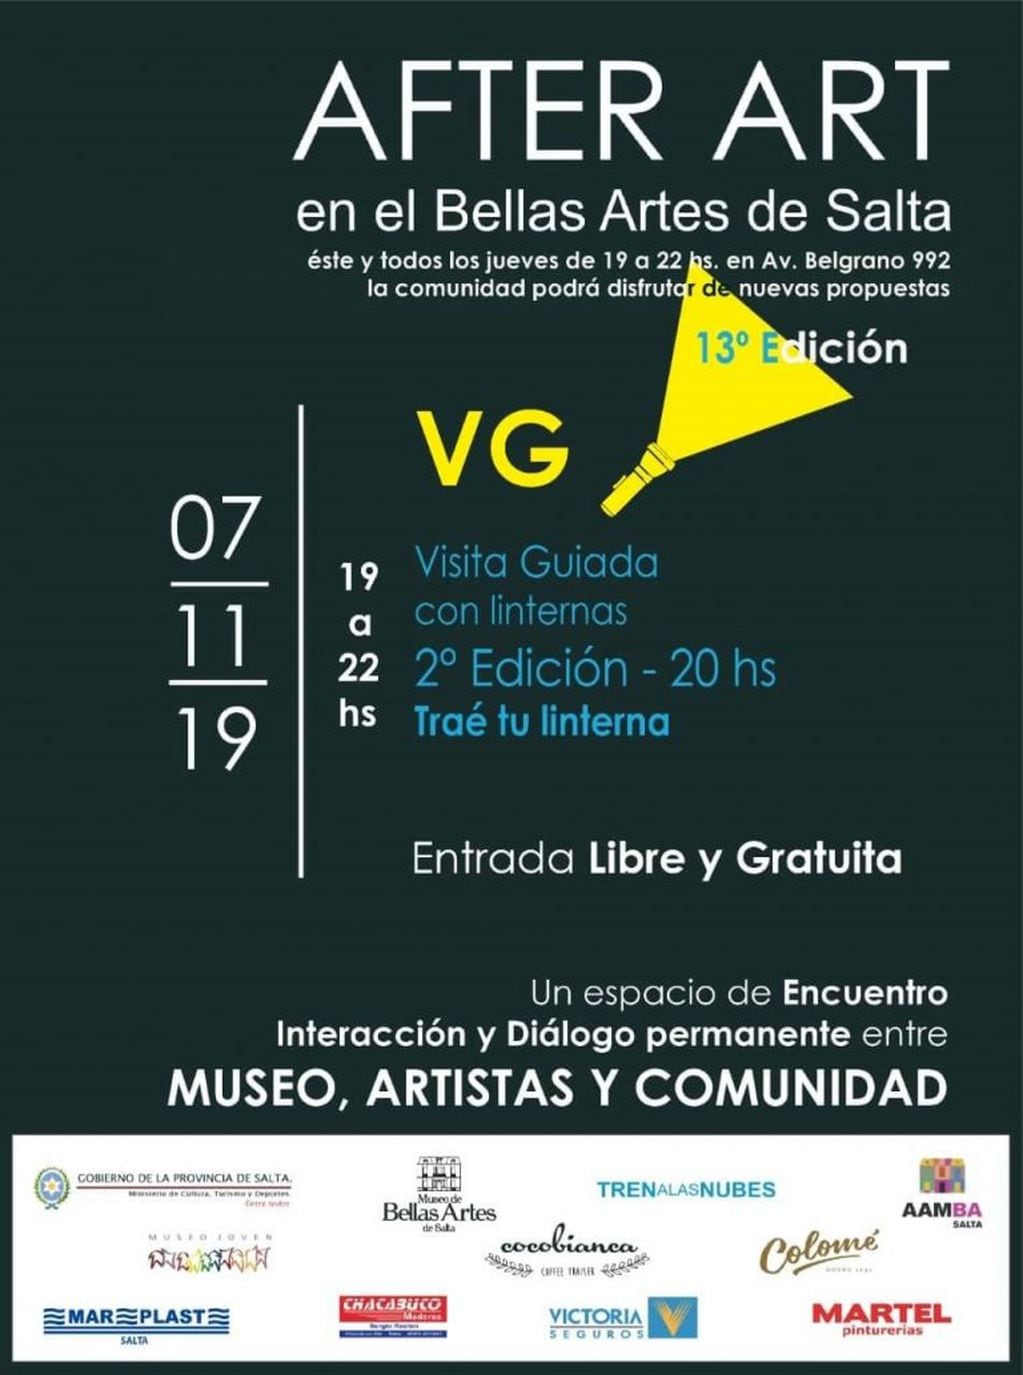 Nuevo AFTER ART (Facebook Museo Bellas Artes Salta)